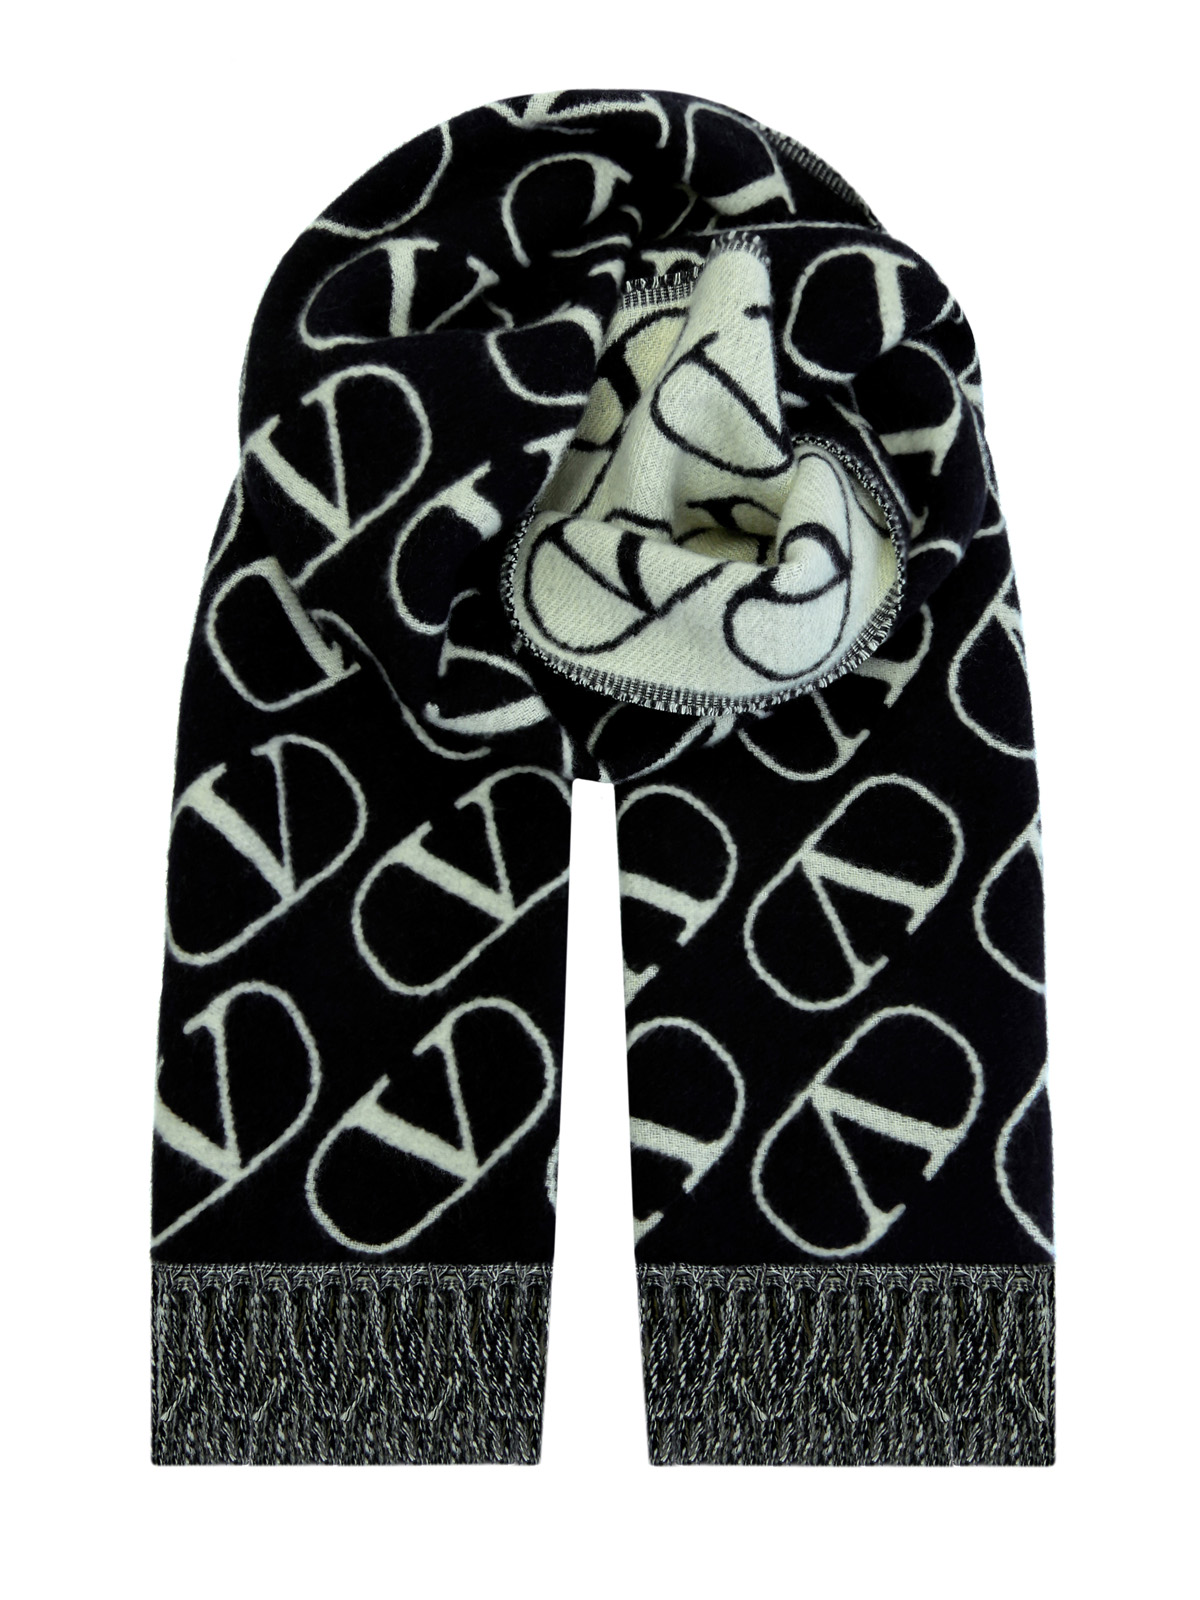 Кашемировый шарф VLogo Signature с жаккардовым принтом VALENTINO GARAVANI, цвет черно-белый, размер 36;36.5;37;37.5;38;38.5;39;40;41;39.5 - фото 1